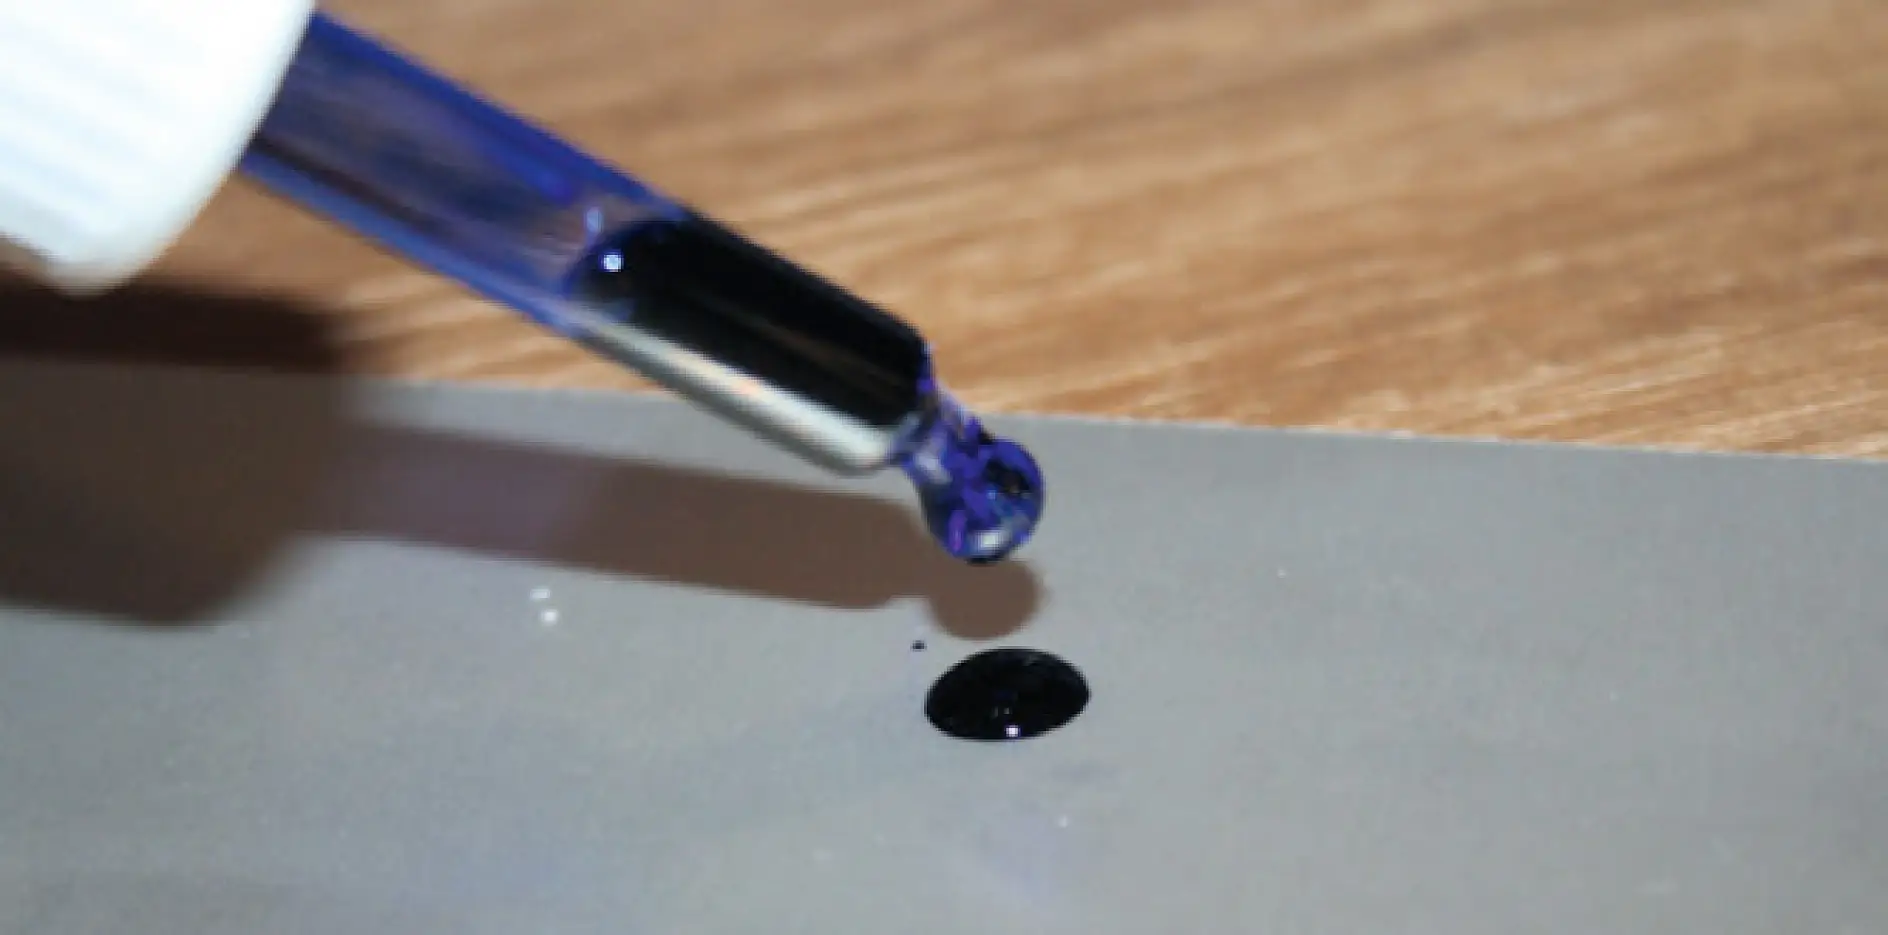 Test dell'inchiostro su alluminio